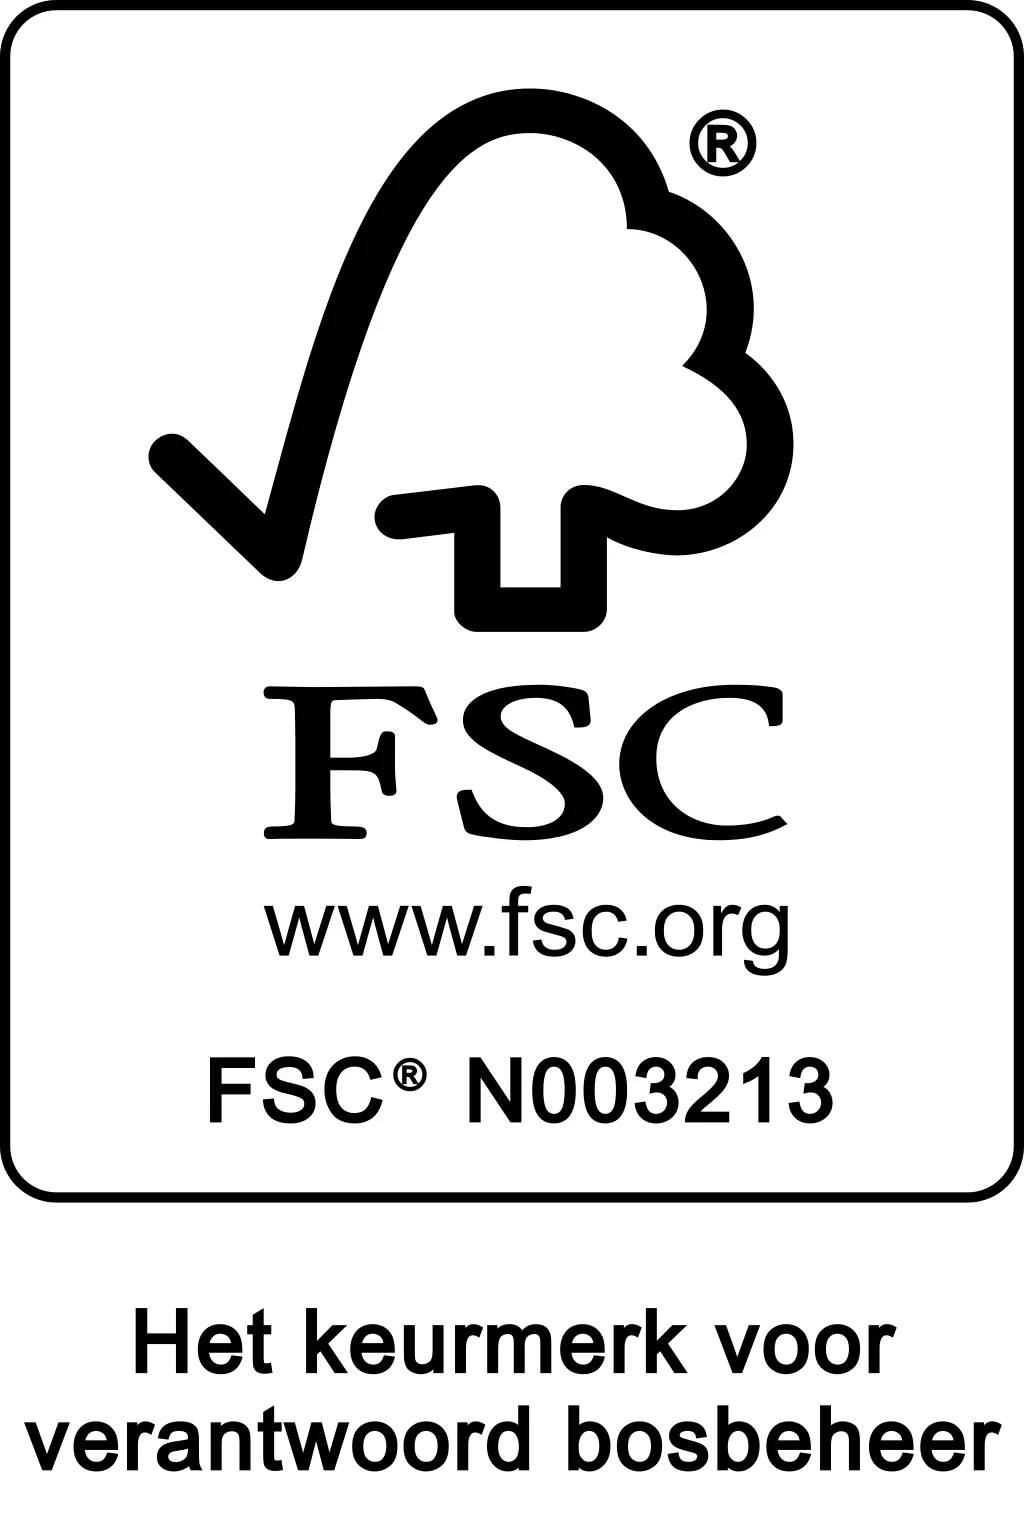 FSC - Het keurmerk voor verantwoord bosbeheer